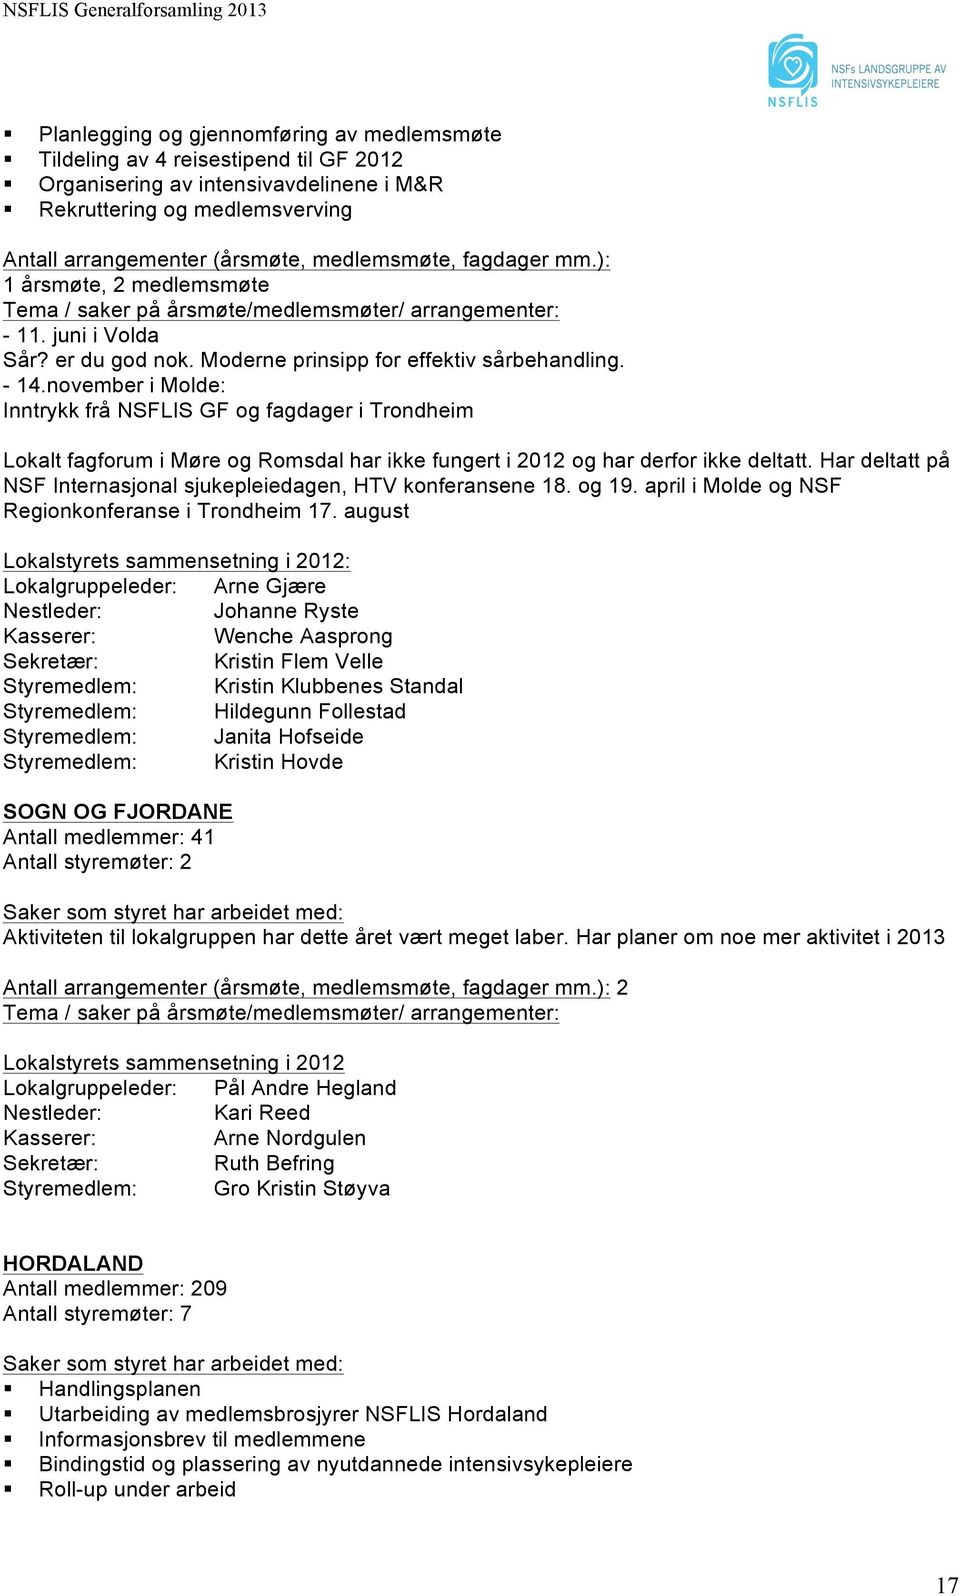 november i Molde: Inntrykk frå NSFLIS GF og fagdager i Trondheim Lokalt fagforum i Møre og Romsdal har ikke fungert i 2012 og har derfor ikke deltatt.